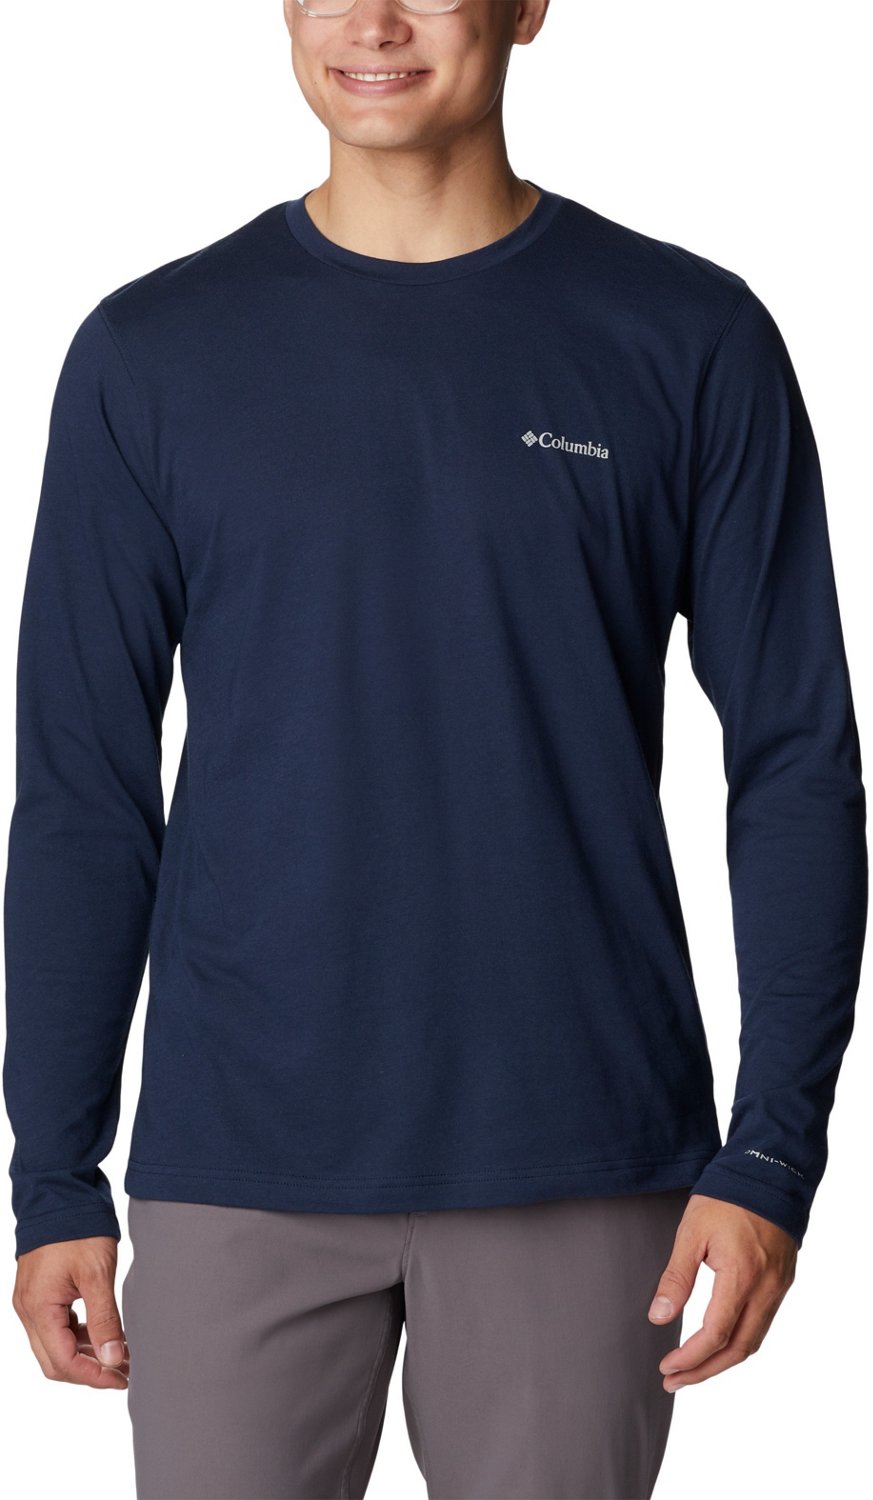 Men's Houston Astros Columbia Orange/Navy Colorblocked Tamiami Omni-Shade  Button-Up Shirt